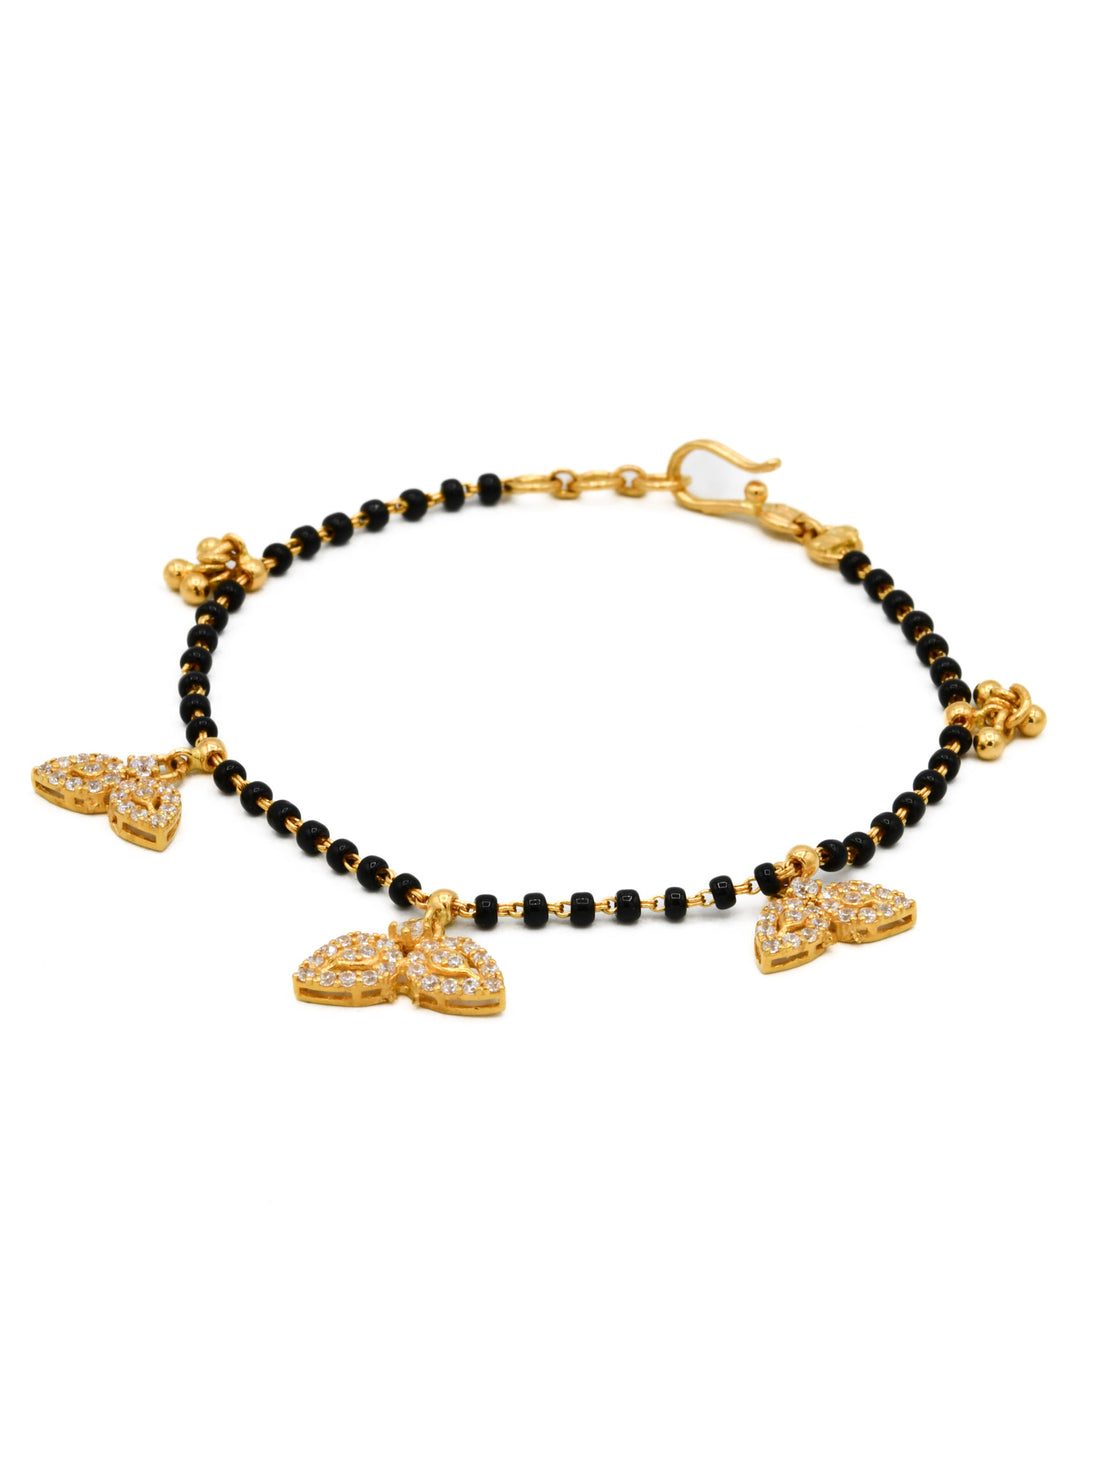 22ct Gold CZ Black Beads Ladies Bracelet - Roop Darshan